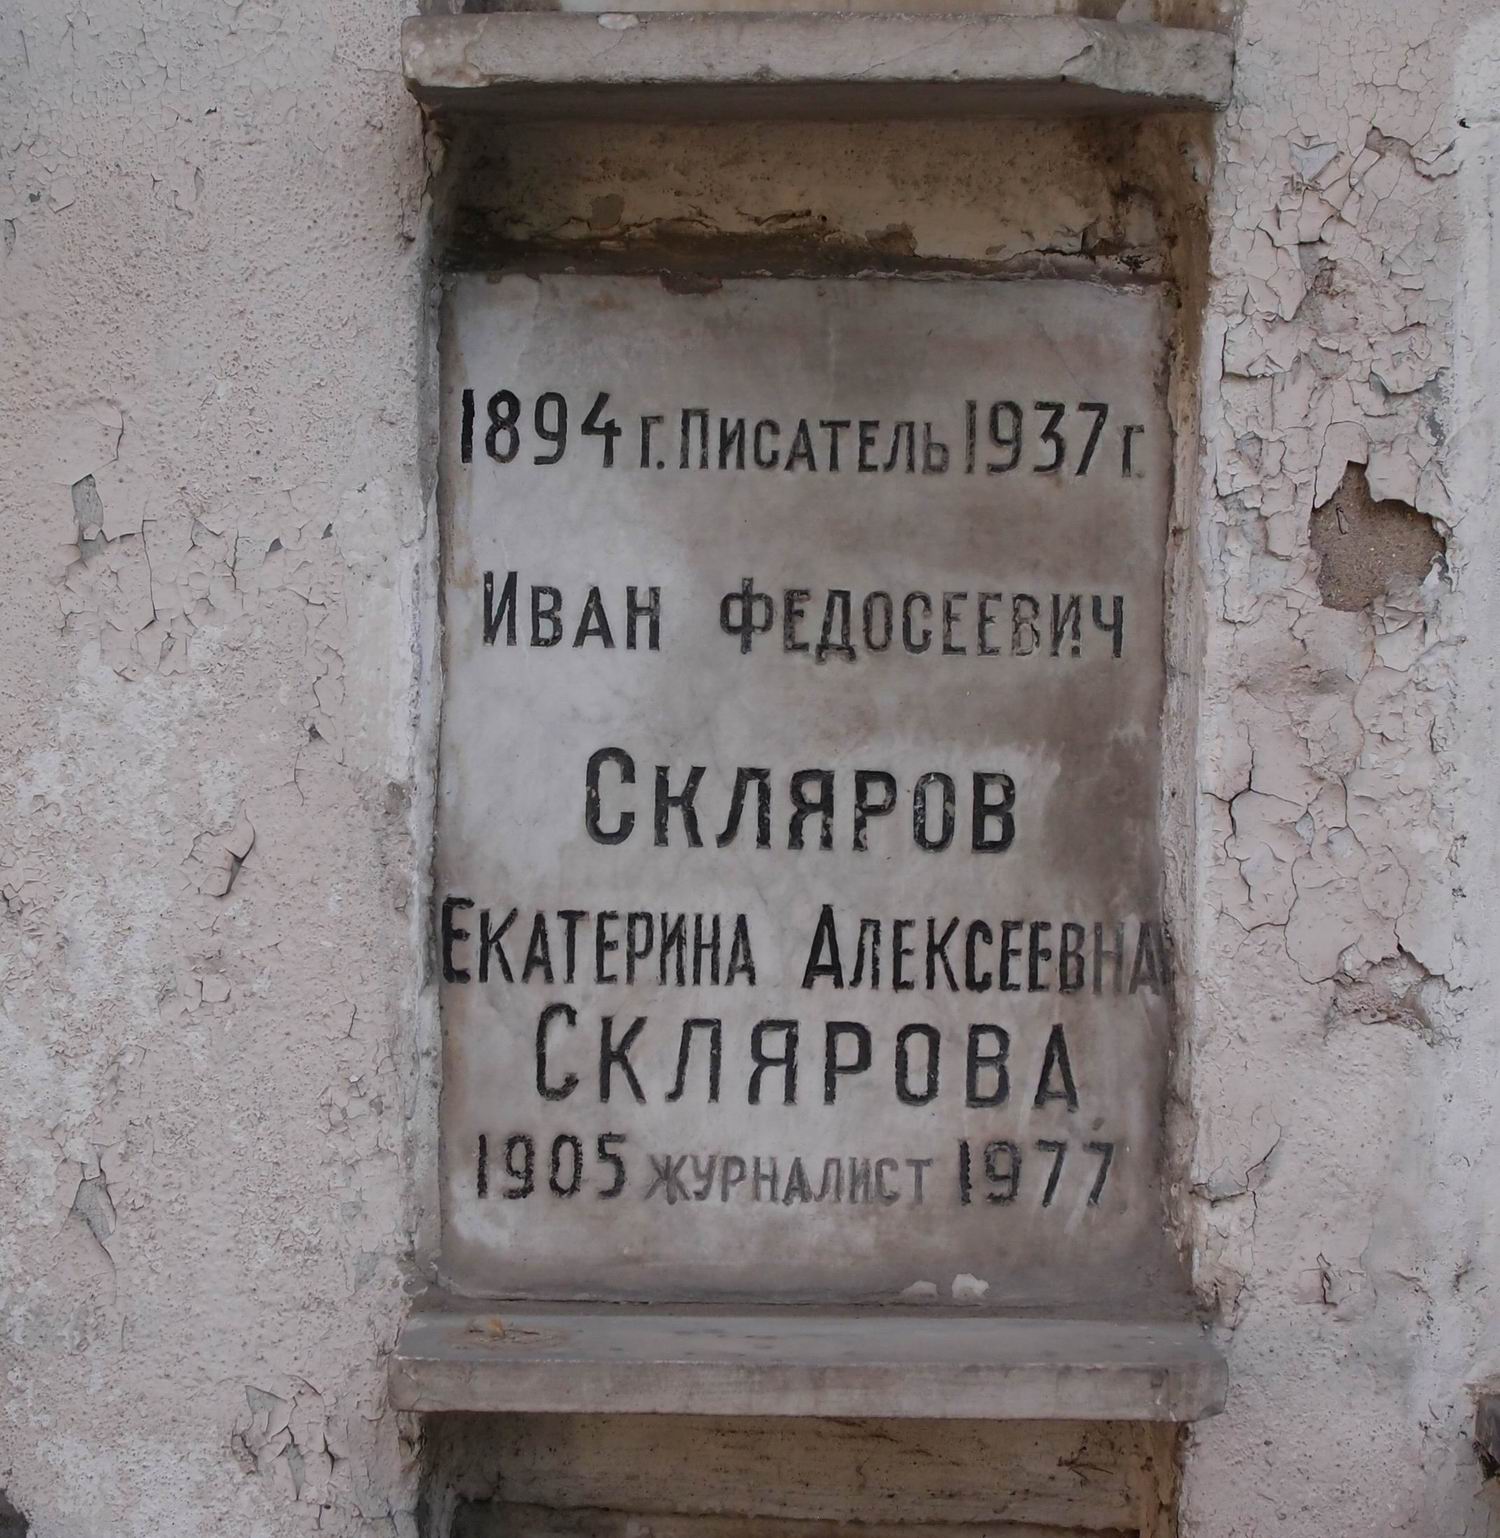 Плита на нише Склярова И.Ф. (1894-1937), на Новодевичьем кладбище (колумбарий [28]-3-3).